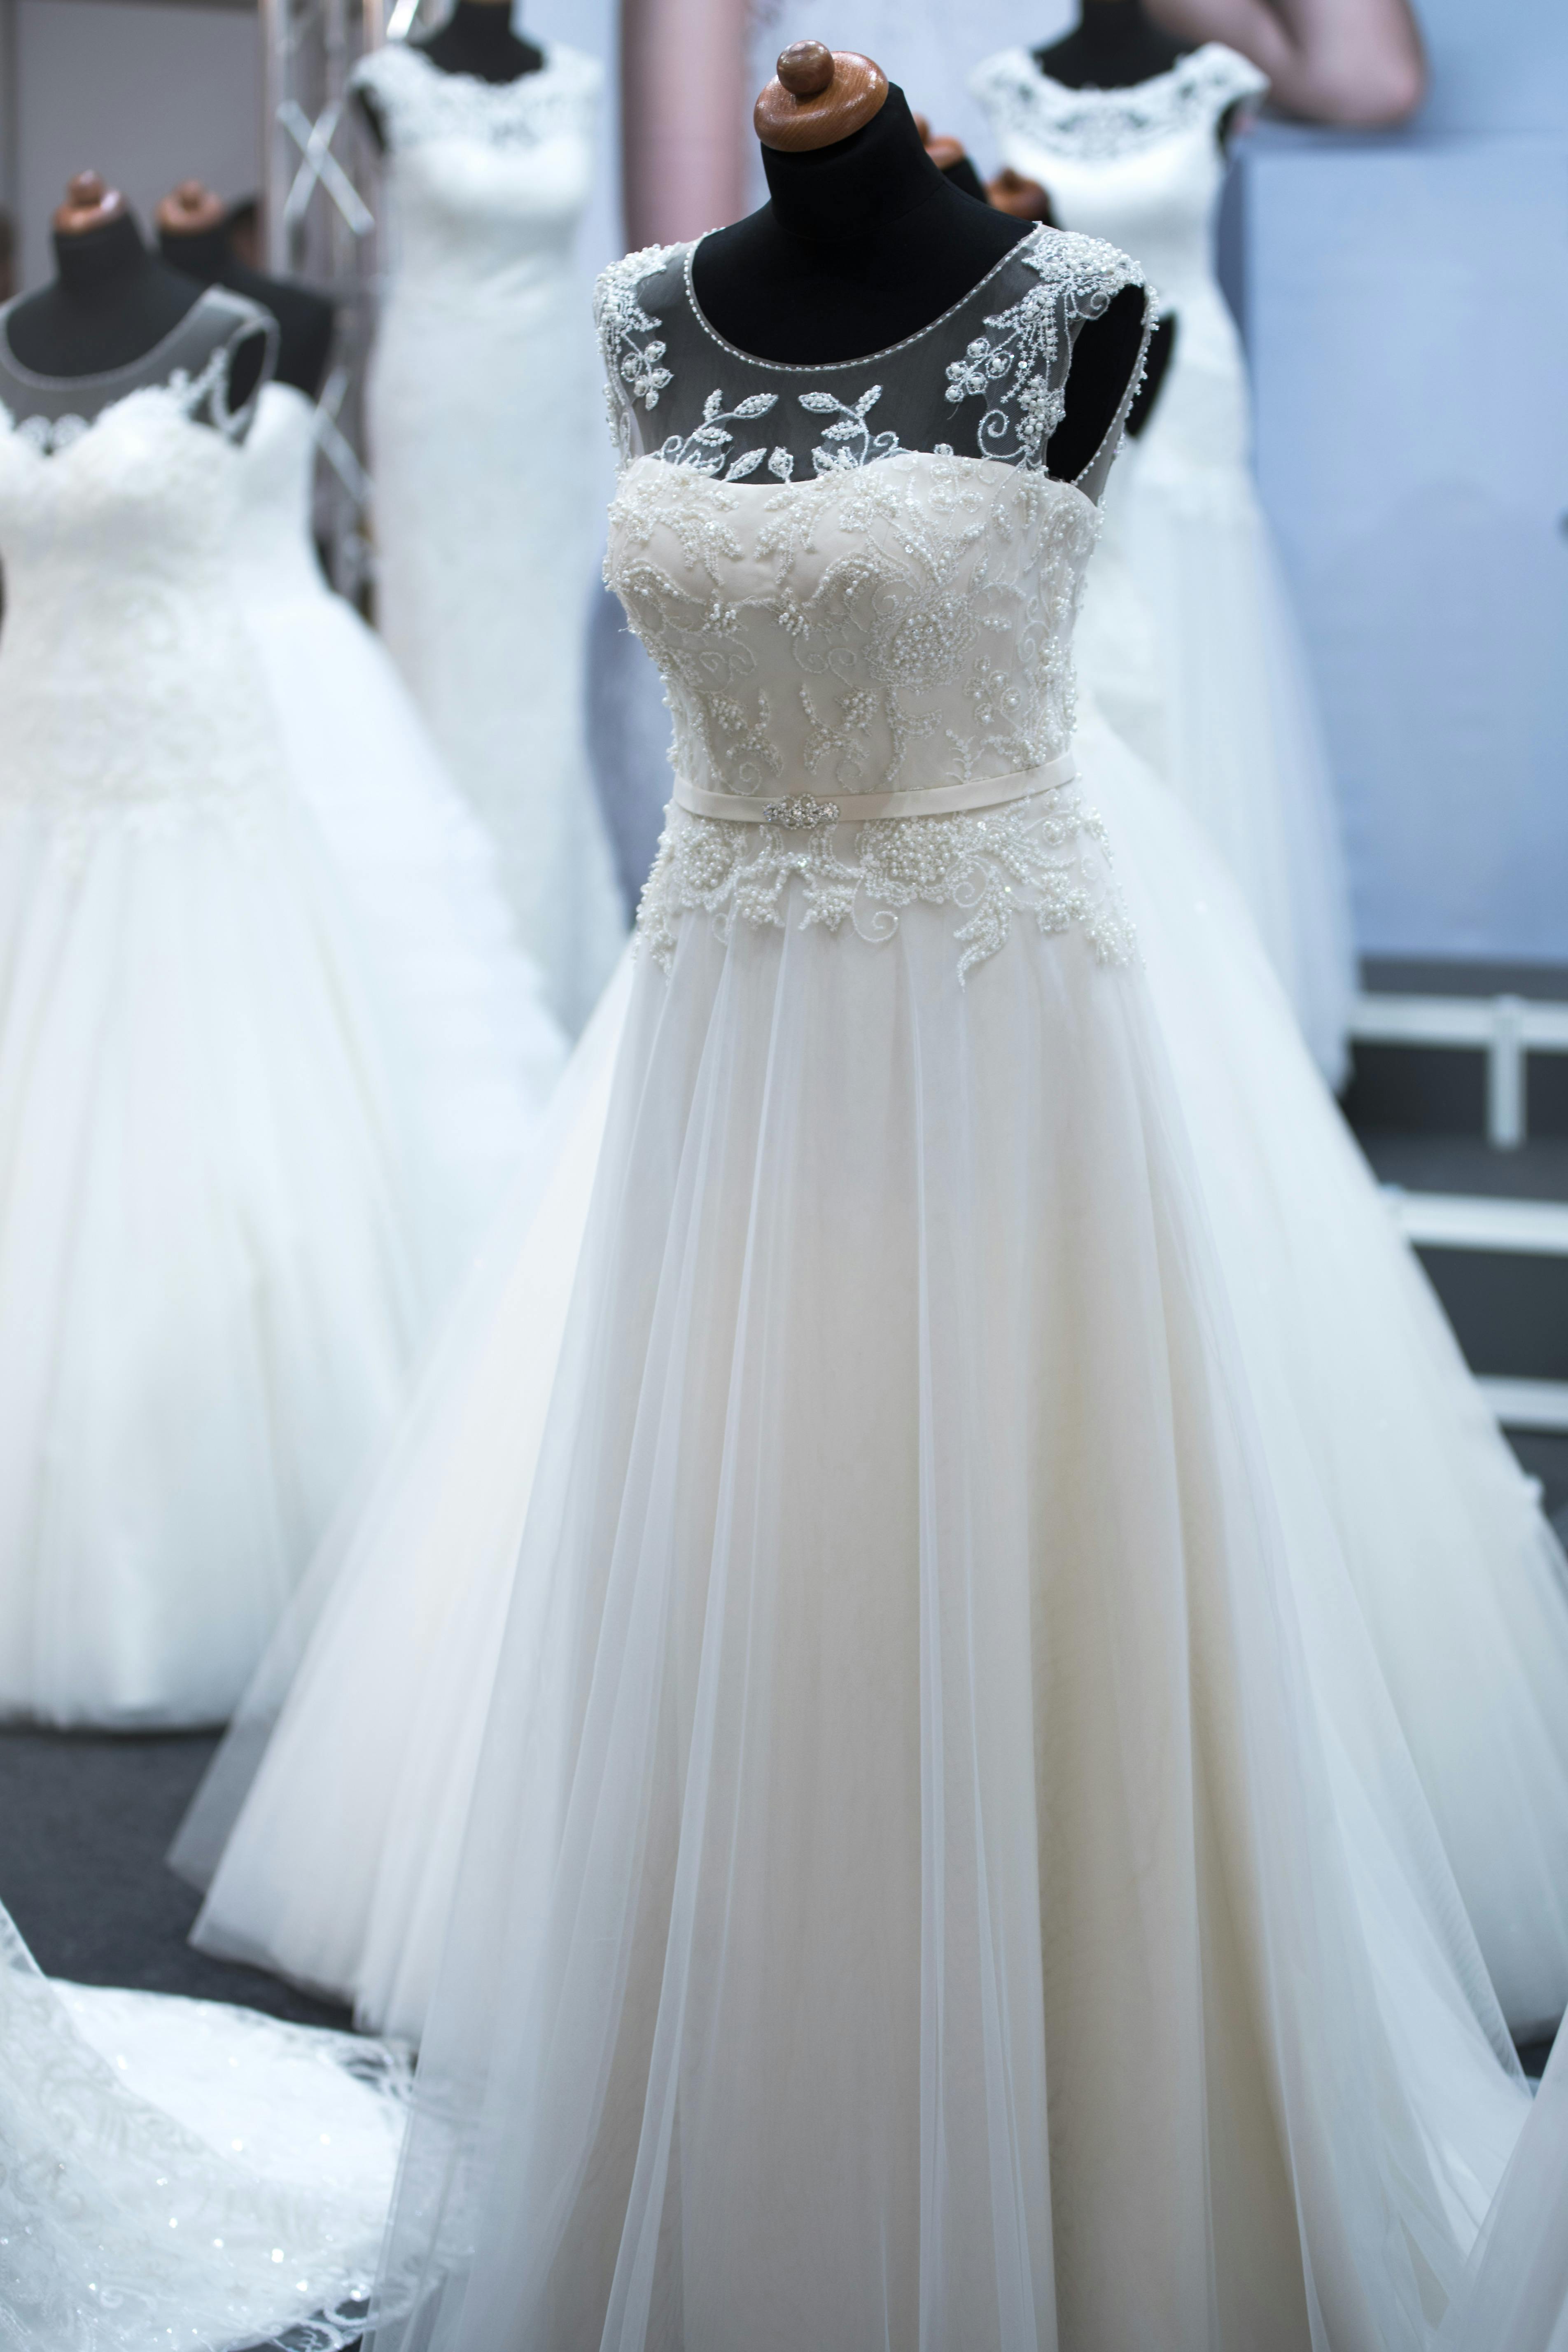 Différentes robes de mariée exposées | Source : Pexels